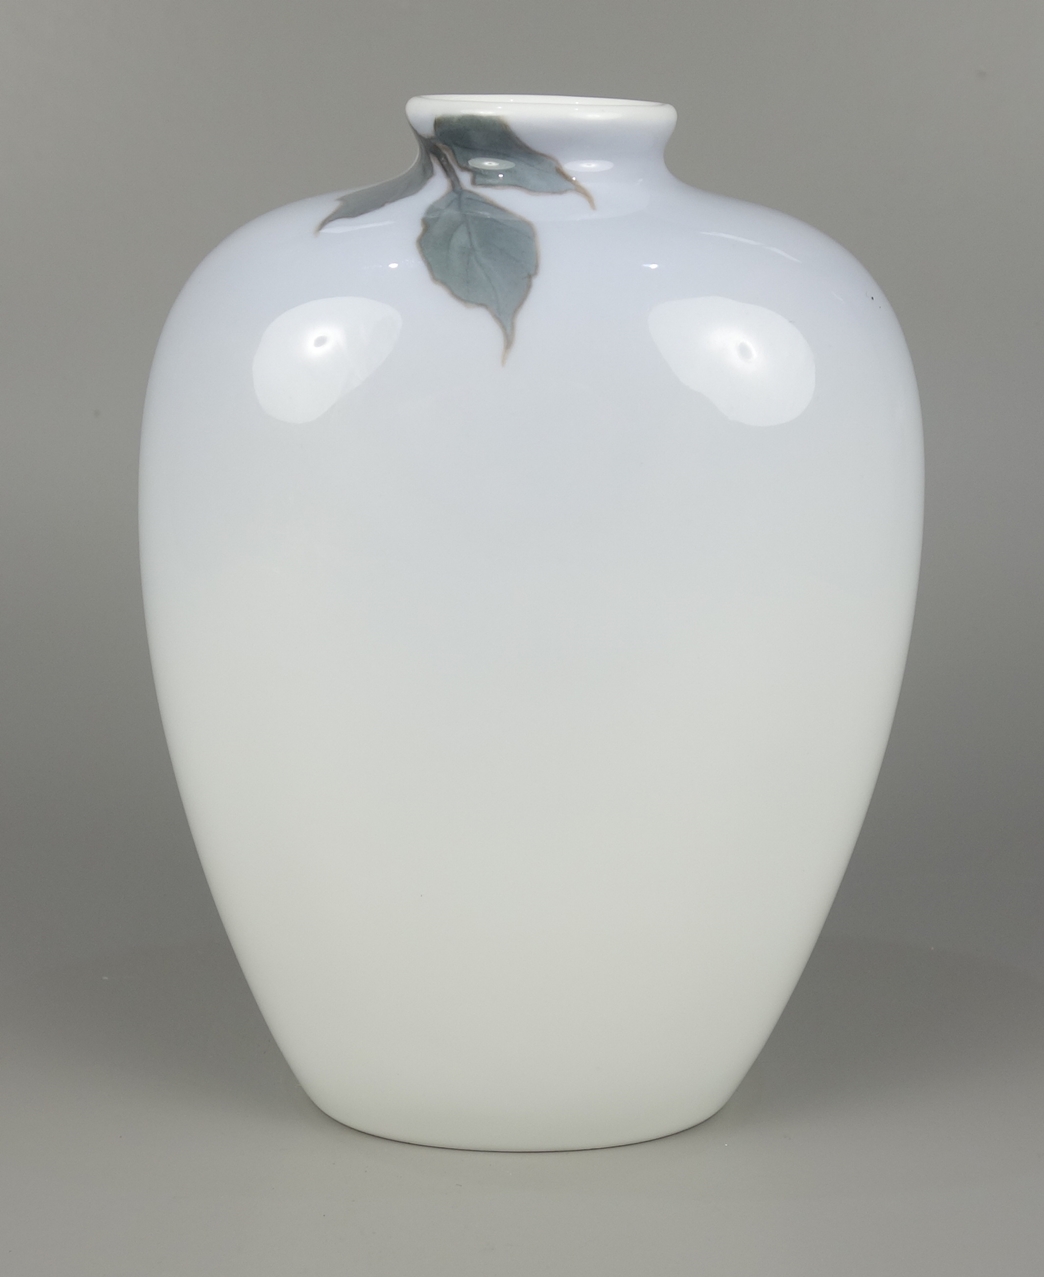 Vase mit Holunderbeeren und Insekt, Royal Copenhagen, Jugendstil um 1920, Form - Image 2 of 3